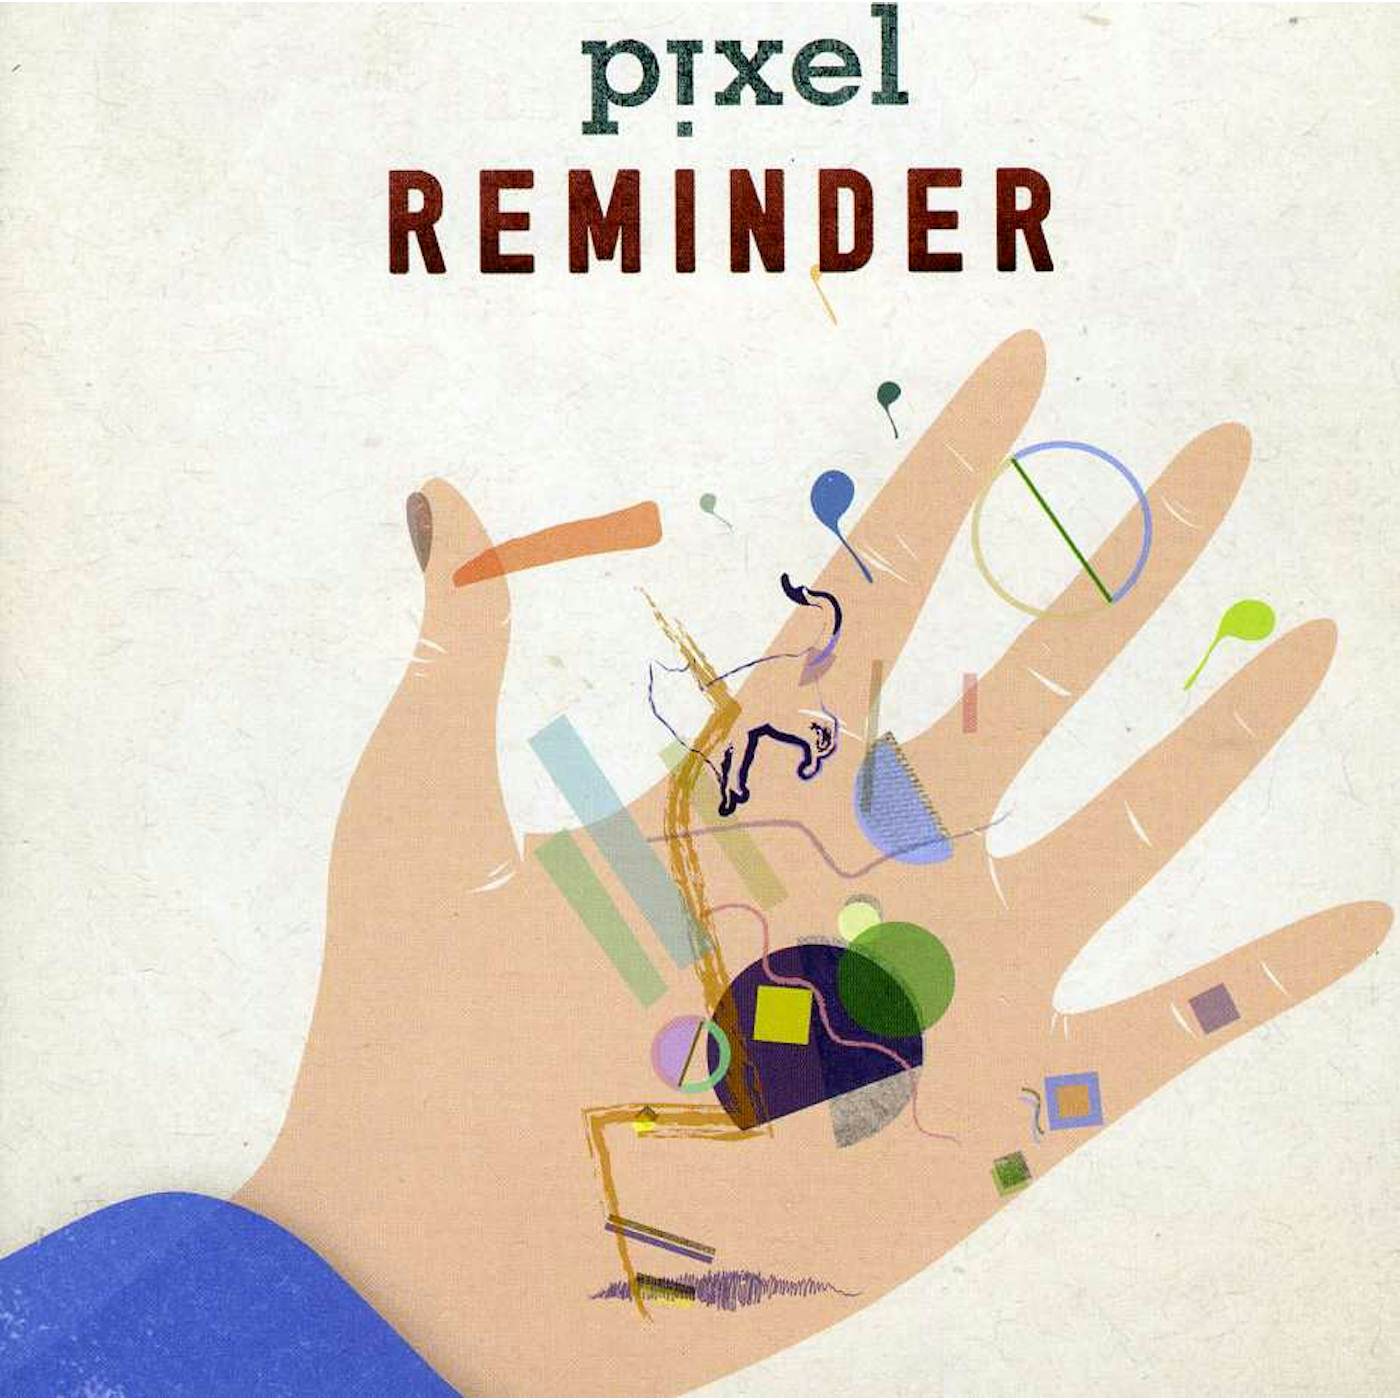 Pixel REMINDER CD